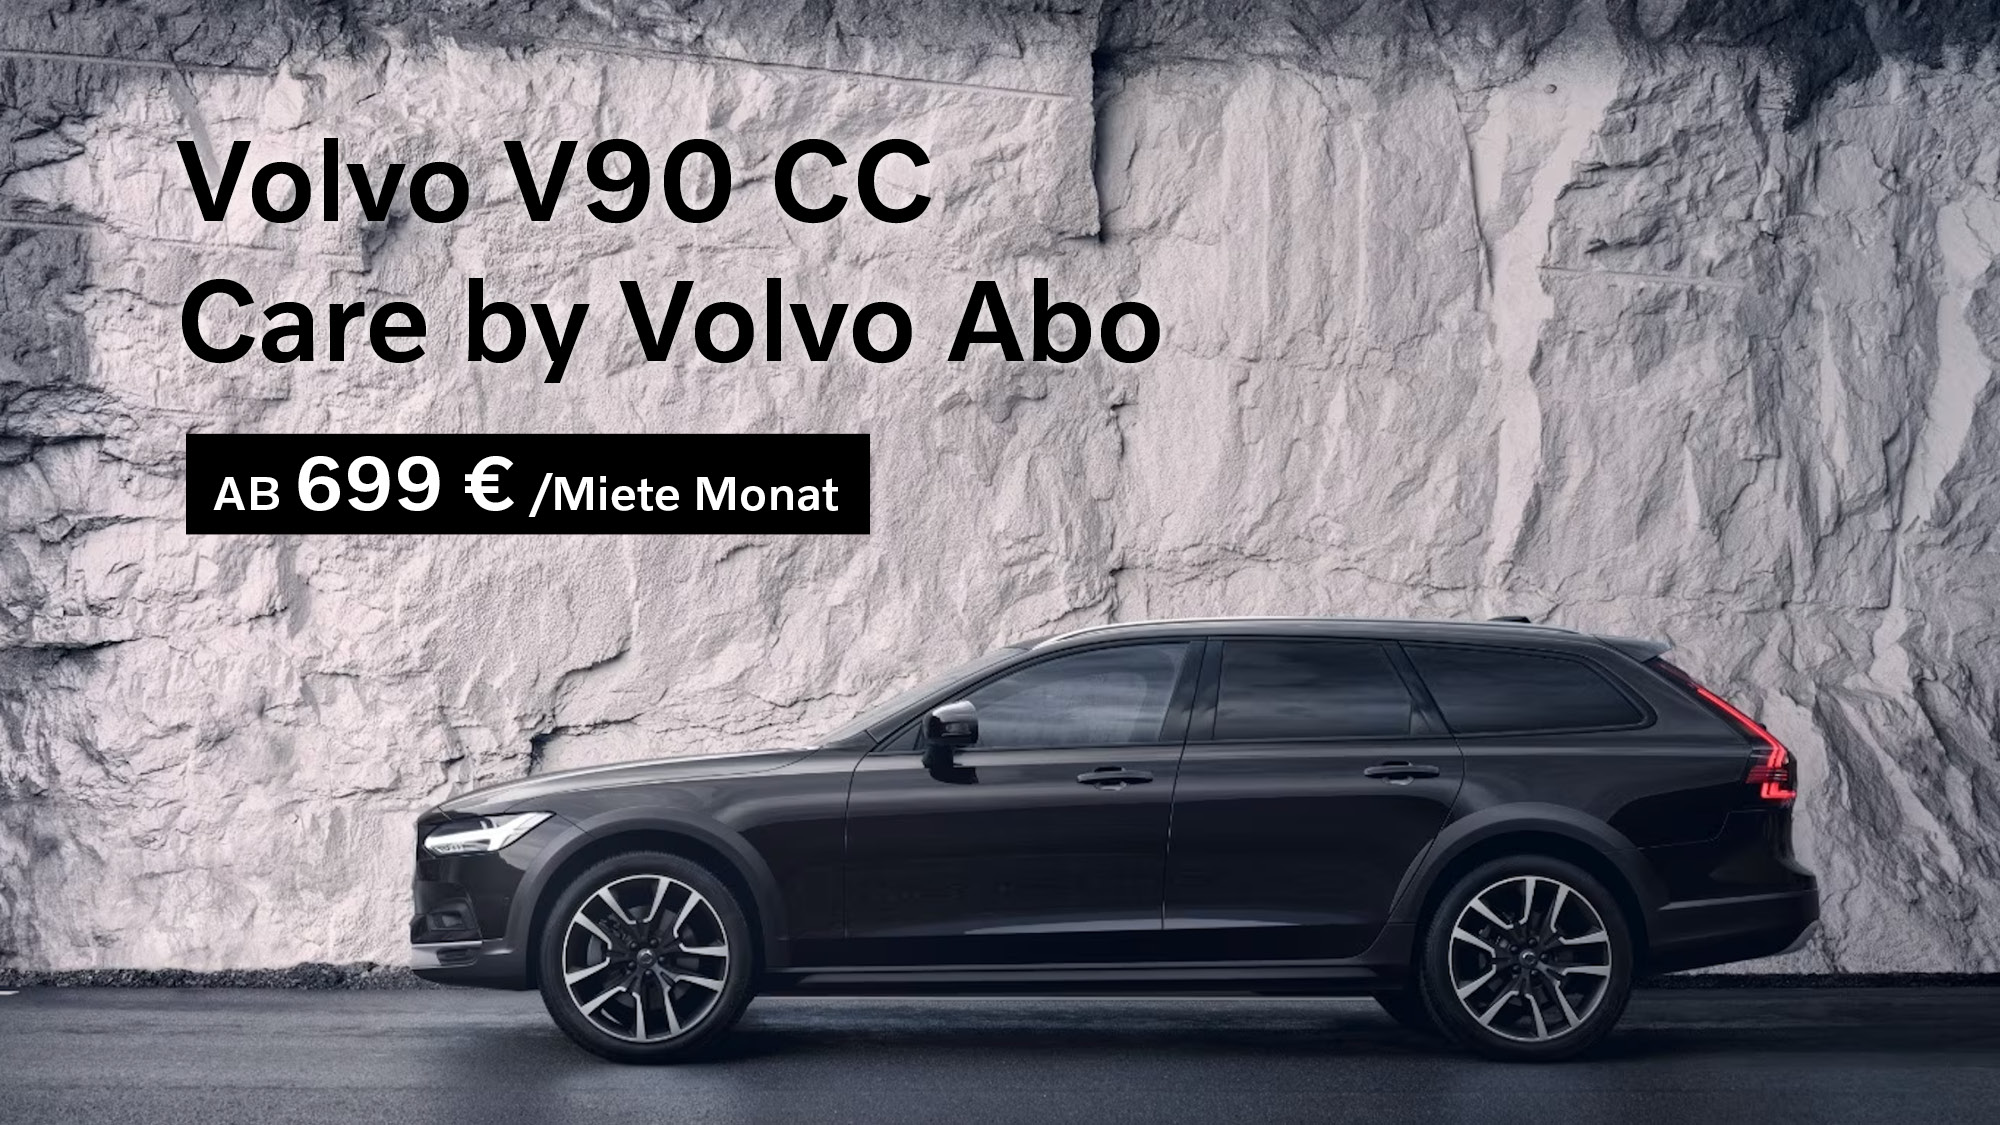 Volvo V90 CC Care by Volvo Abo